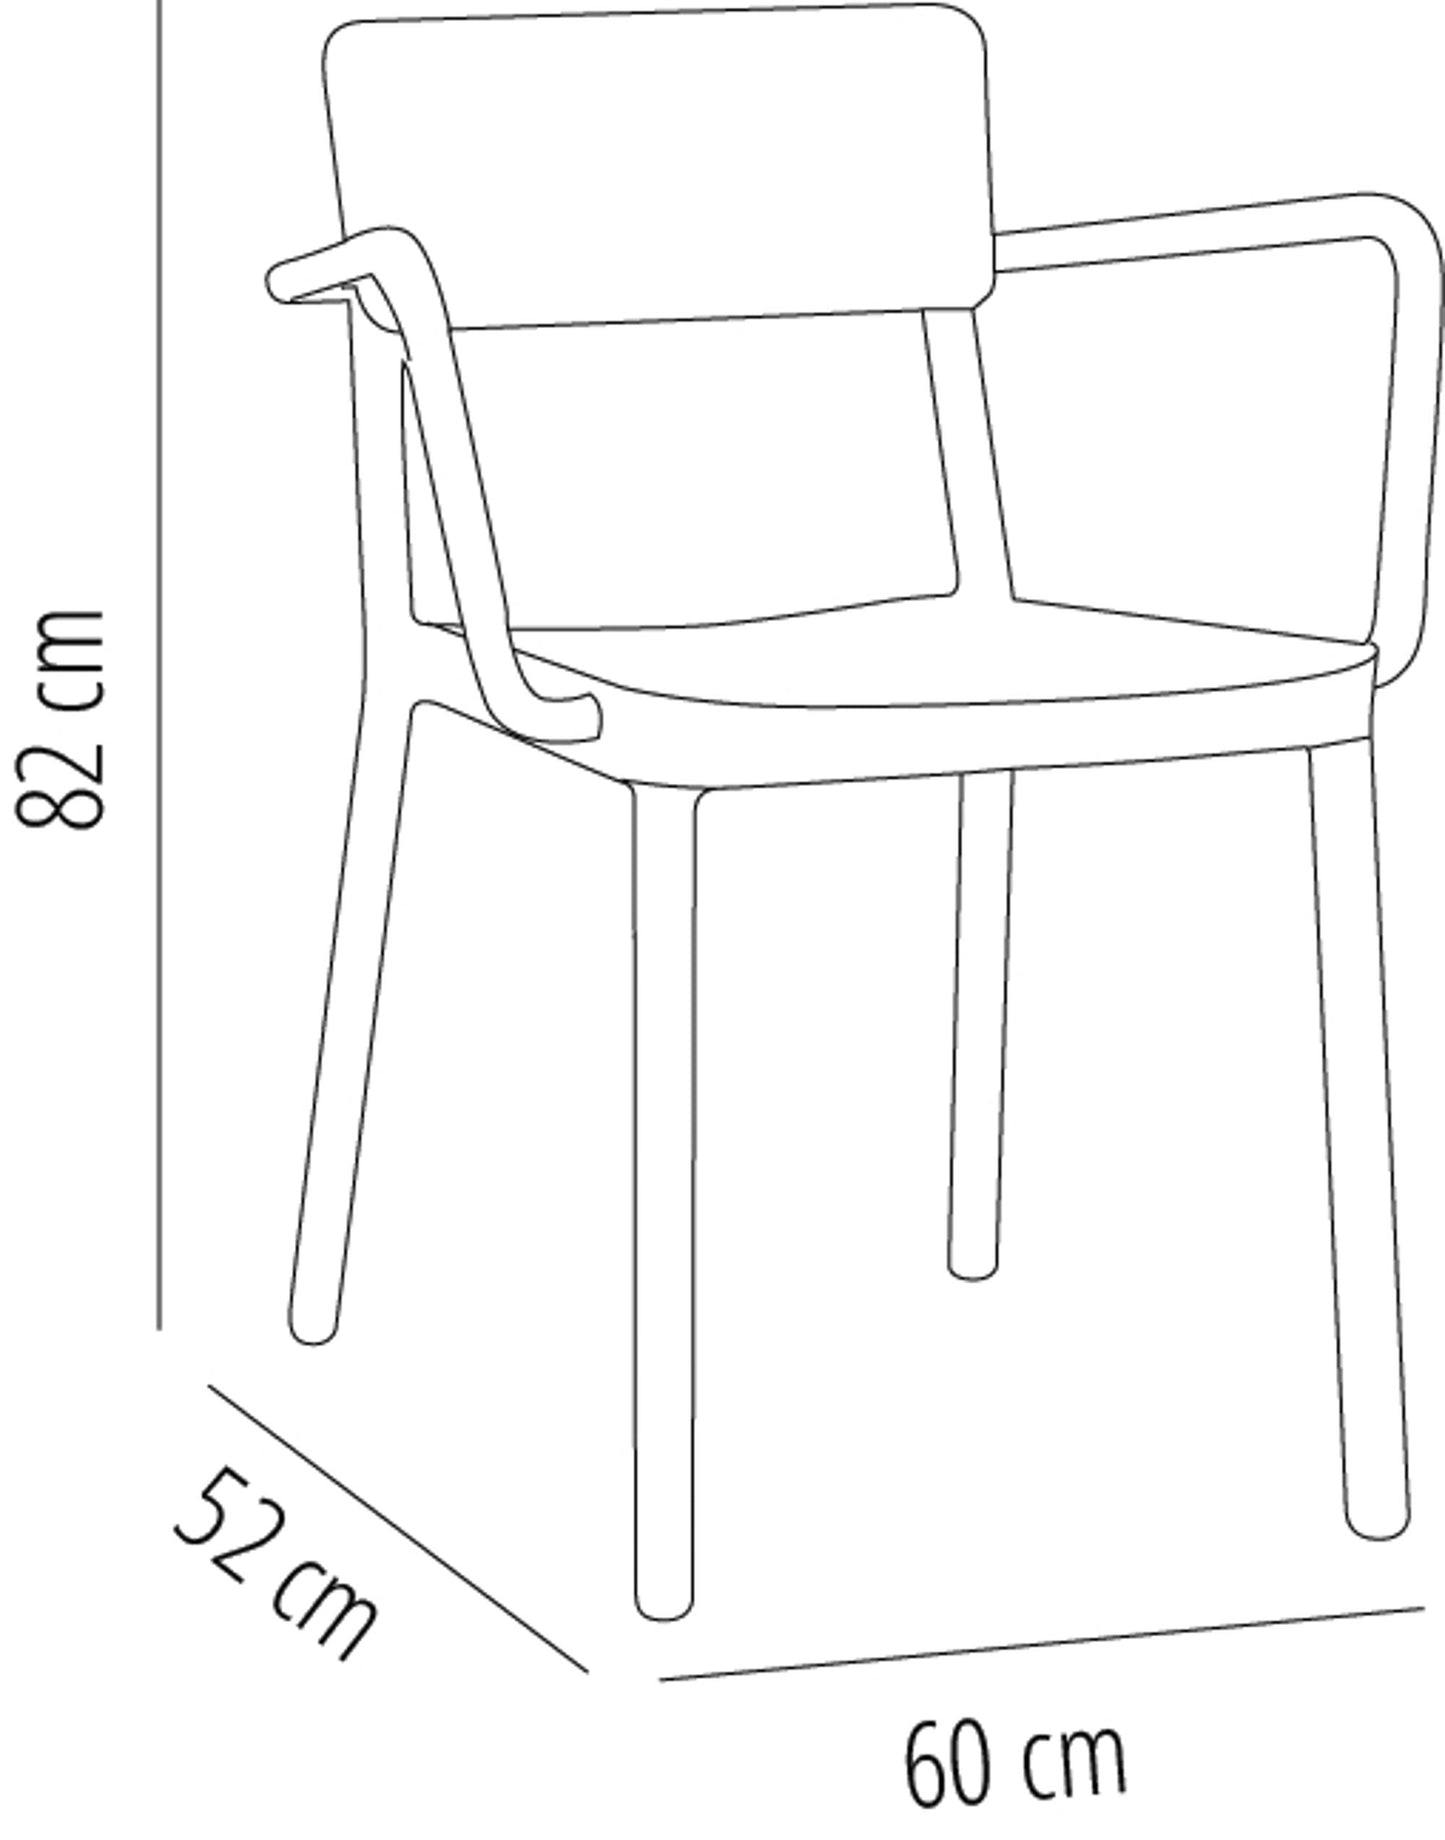 Resol lisboa set 2 silla con brazos interior, exterior gris oscuro